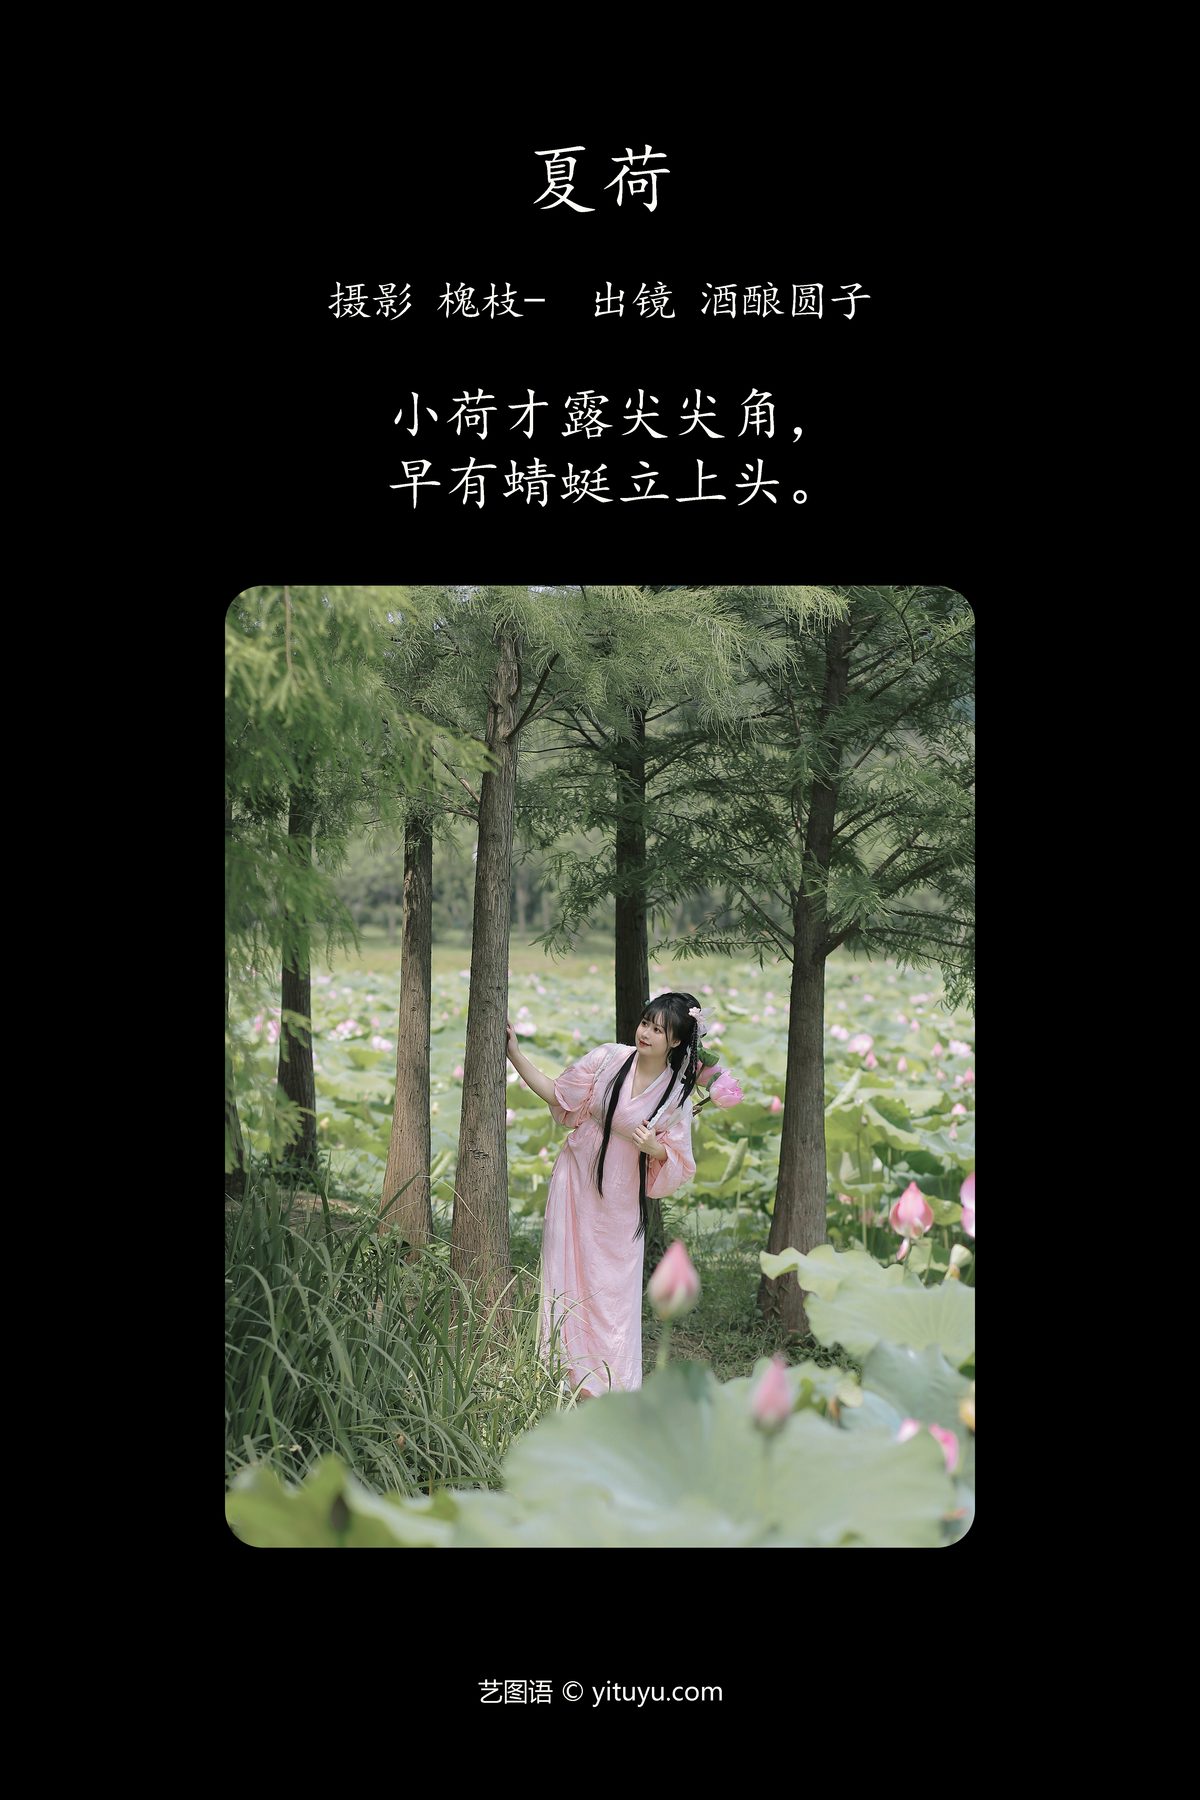 YiTuYu艺图语 Vol 4850 Jiu Niang Yuan Zi 0002 4014261459.jpg